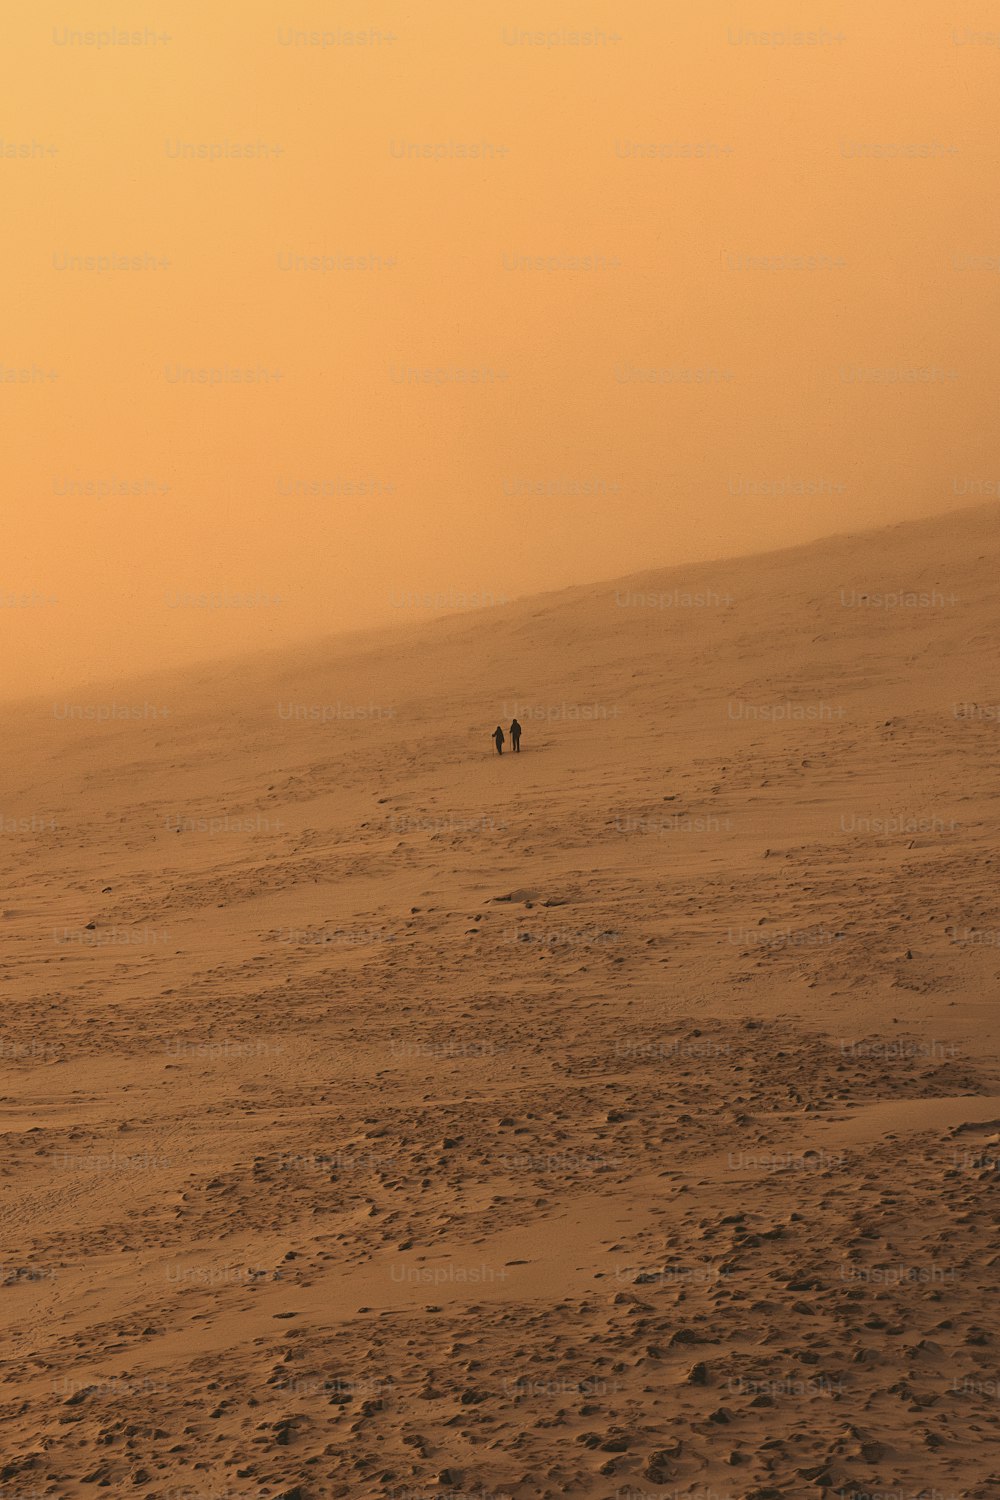 a couple of people walking across a sandy field